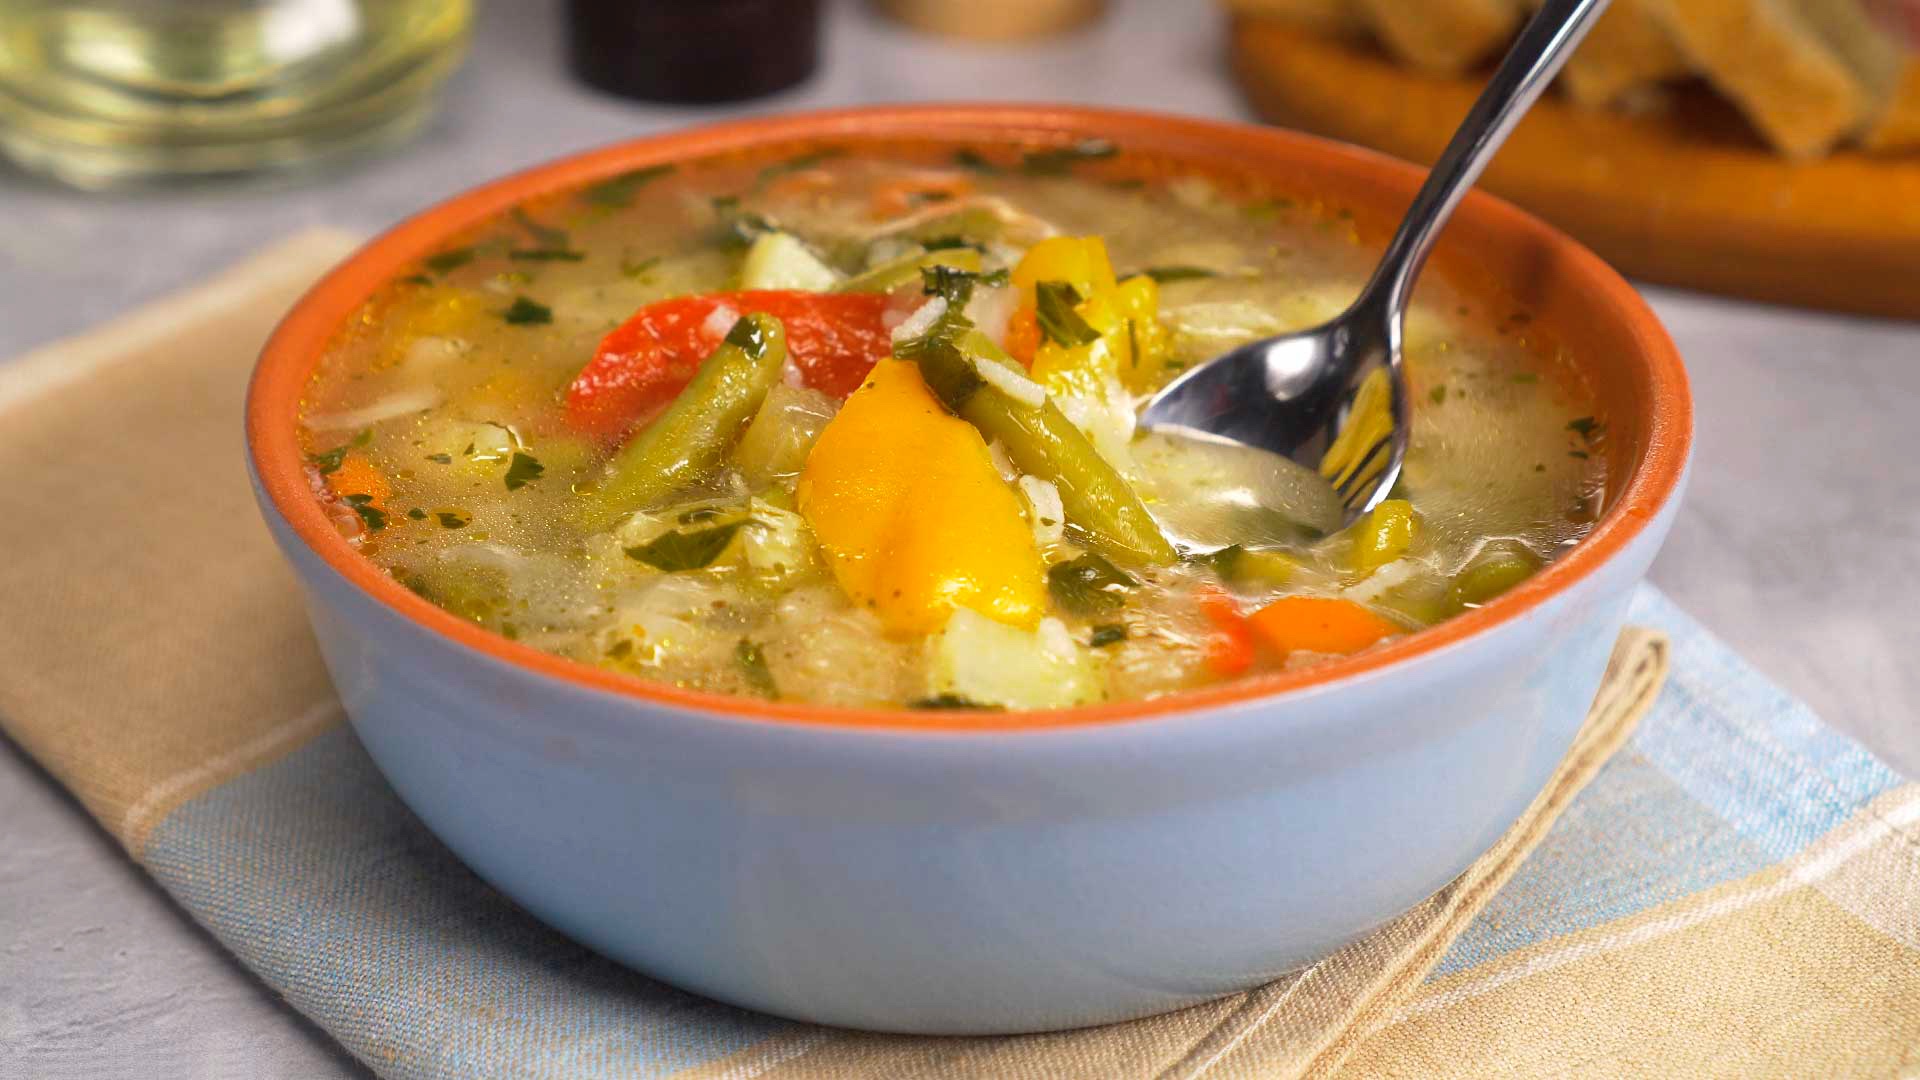 Варим детский овощной суп: вкусные рецепты для любого возраста